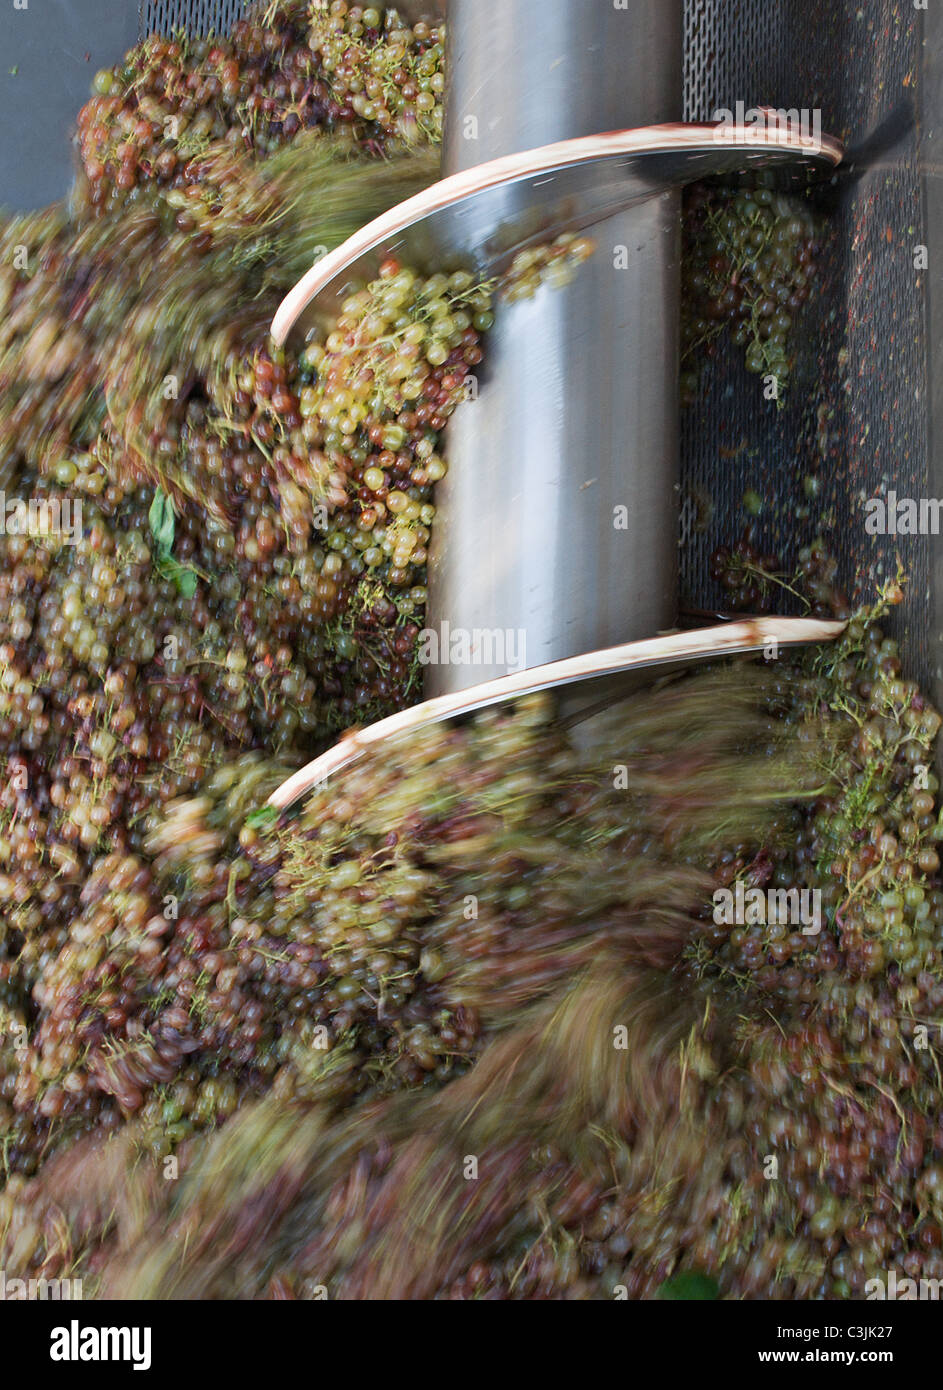 Grape crushing in machinery, blurred motion Stock Photo